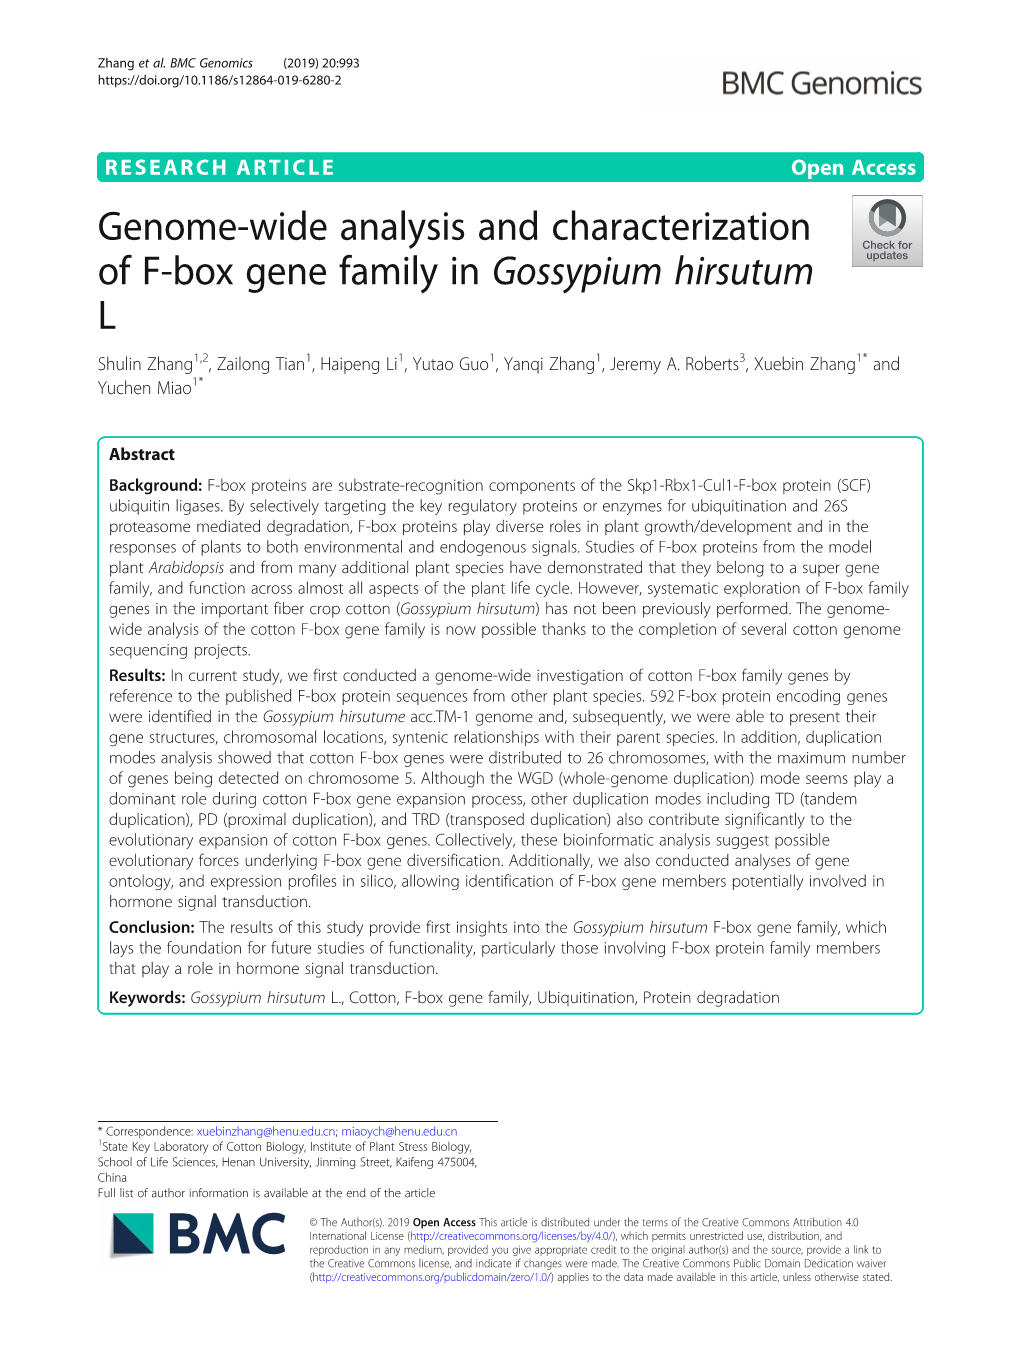 Genome-Wide Analysis and Characterization of F-Box Gene Family in Gossypium Hirsutum L Shulin Zhang1,2, Zailong Tian1, Haipeng Li1, Yutao Guo1, Yanqi Zhang1, Jeremy A